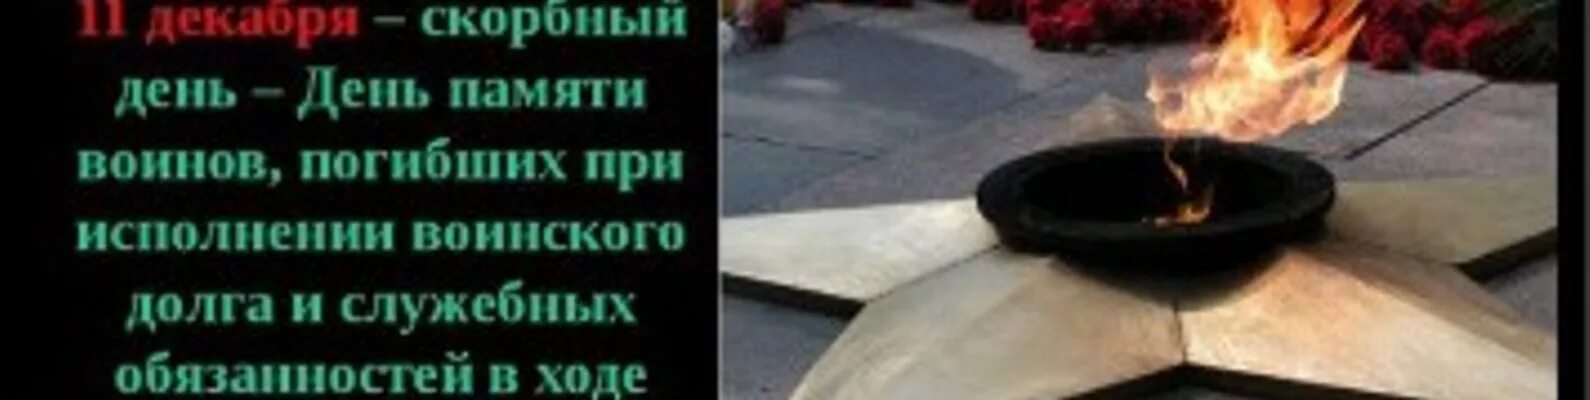 Пр скорбный факт. 11 Декабря день памяти погибших в Чечне. 11 Декабря память погибших в Чечне. День памяти Чеченской войны 11 декабря. День памяти 11 декабря стихи.